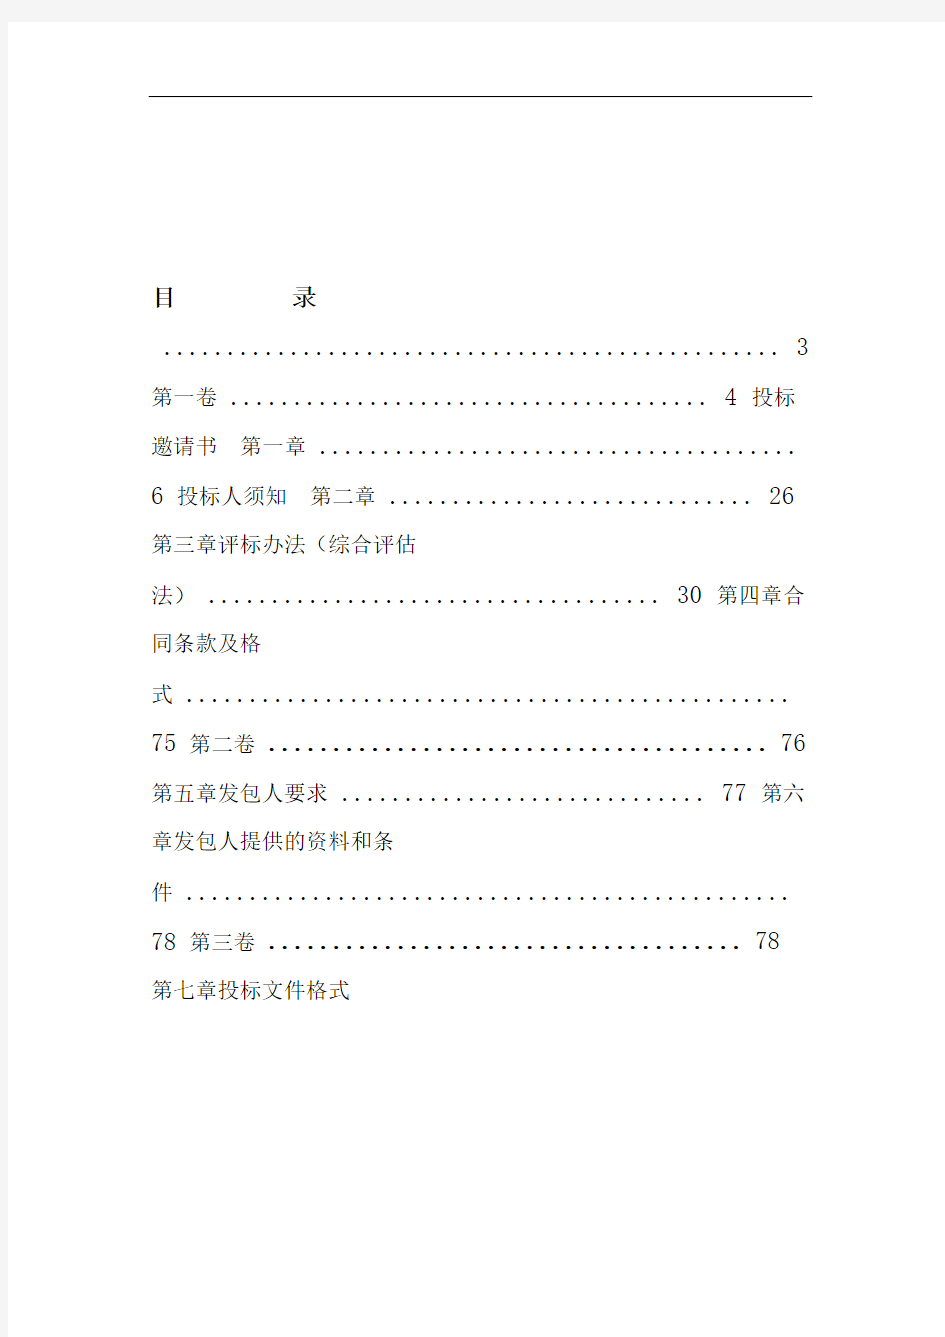 中华人民共和国标准设计施工总承包招标文件